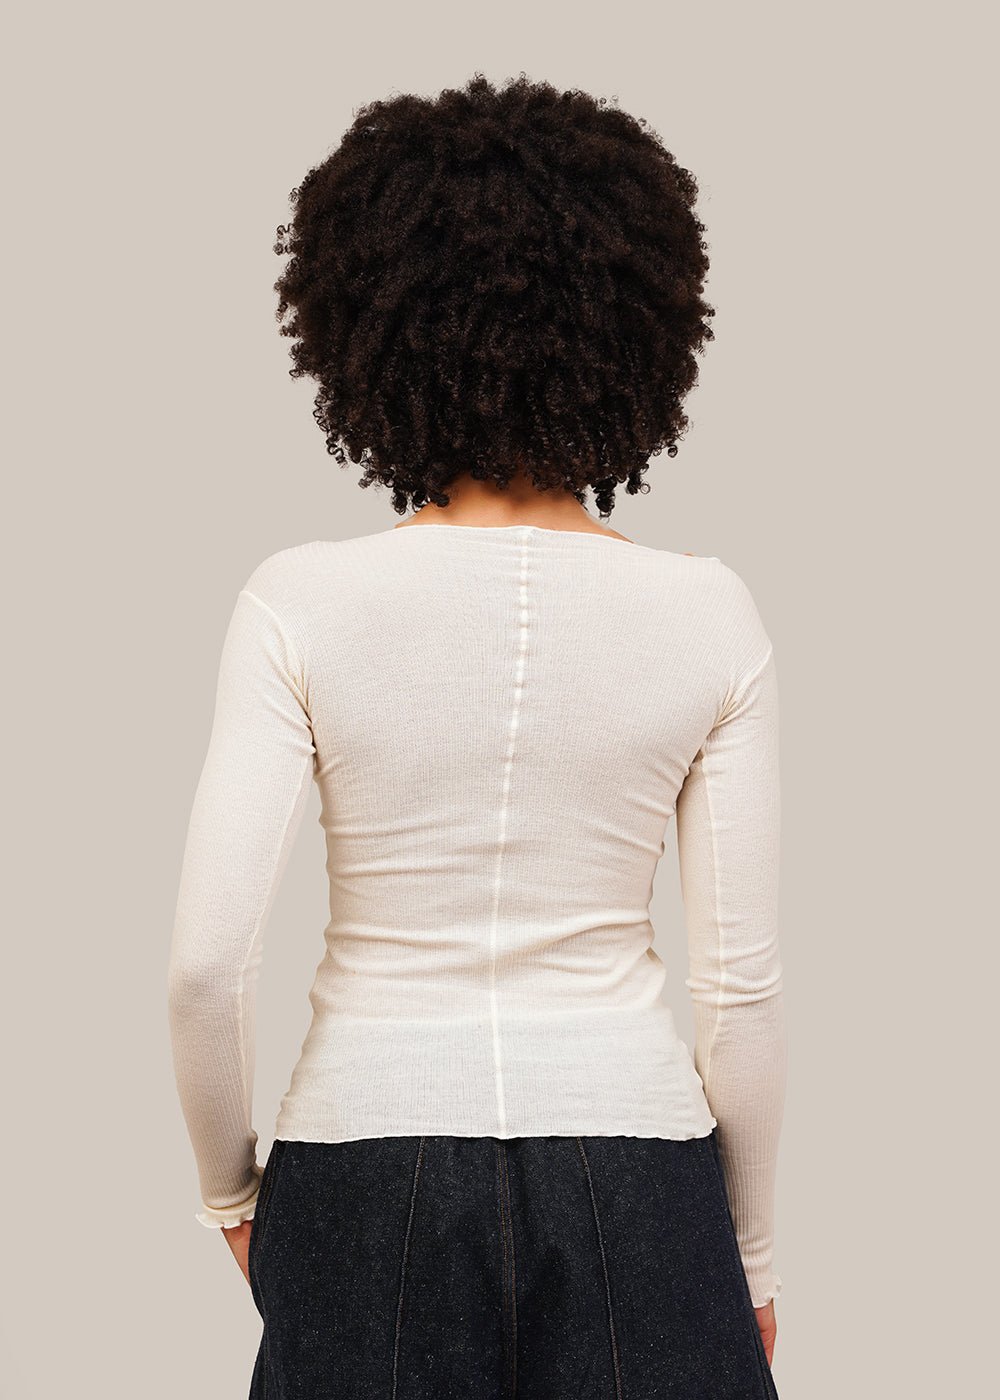 Baserange Off-White Pama Long-Sleeve Shirt - New Classics Studios Sustainable Ethical Fashion Canada